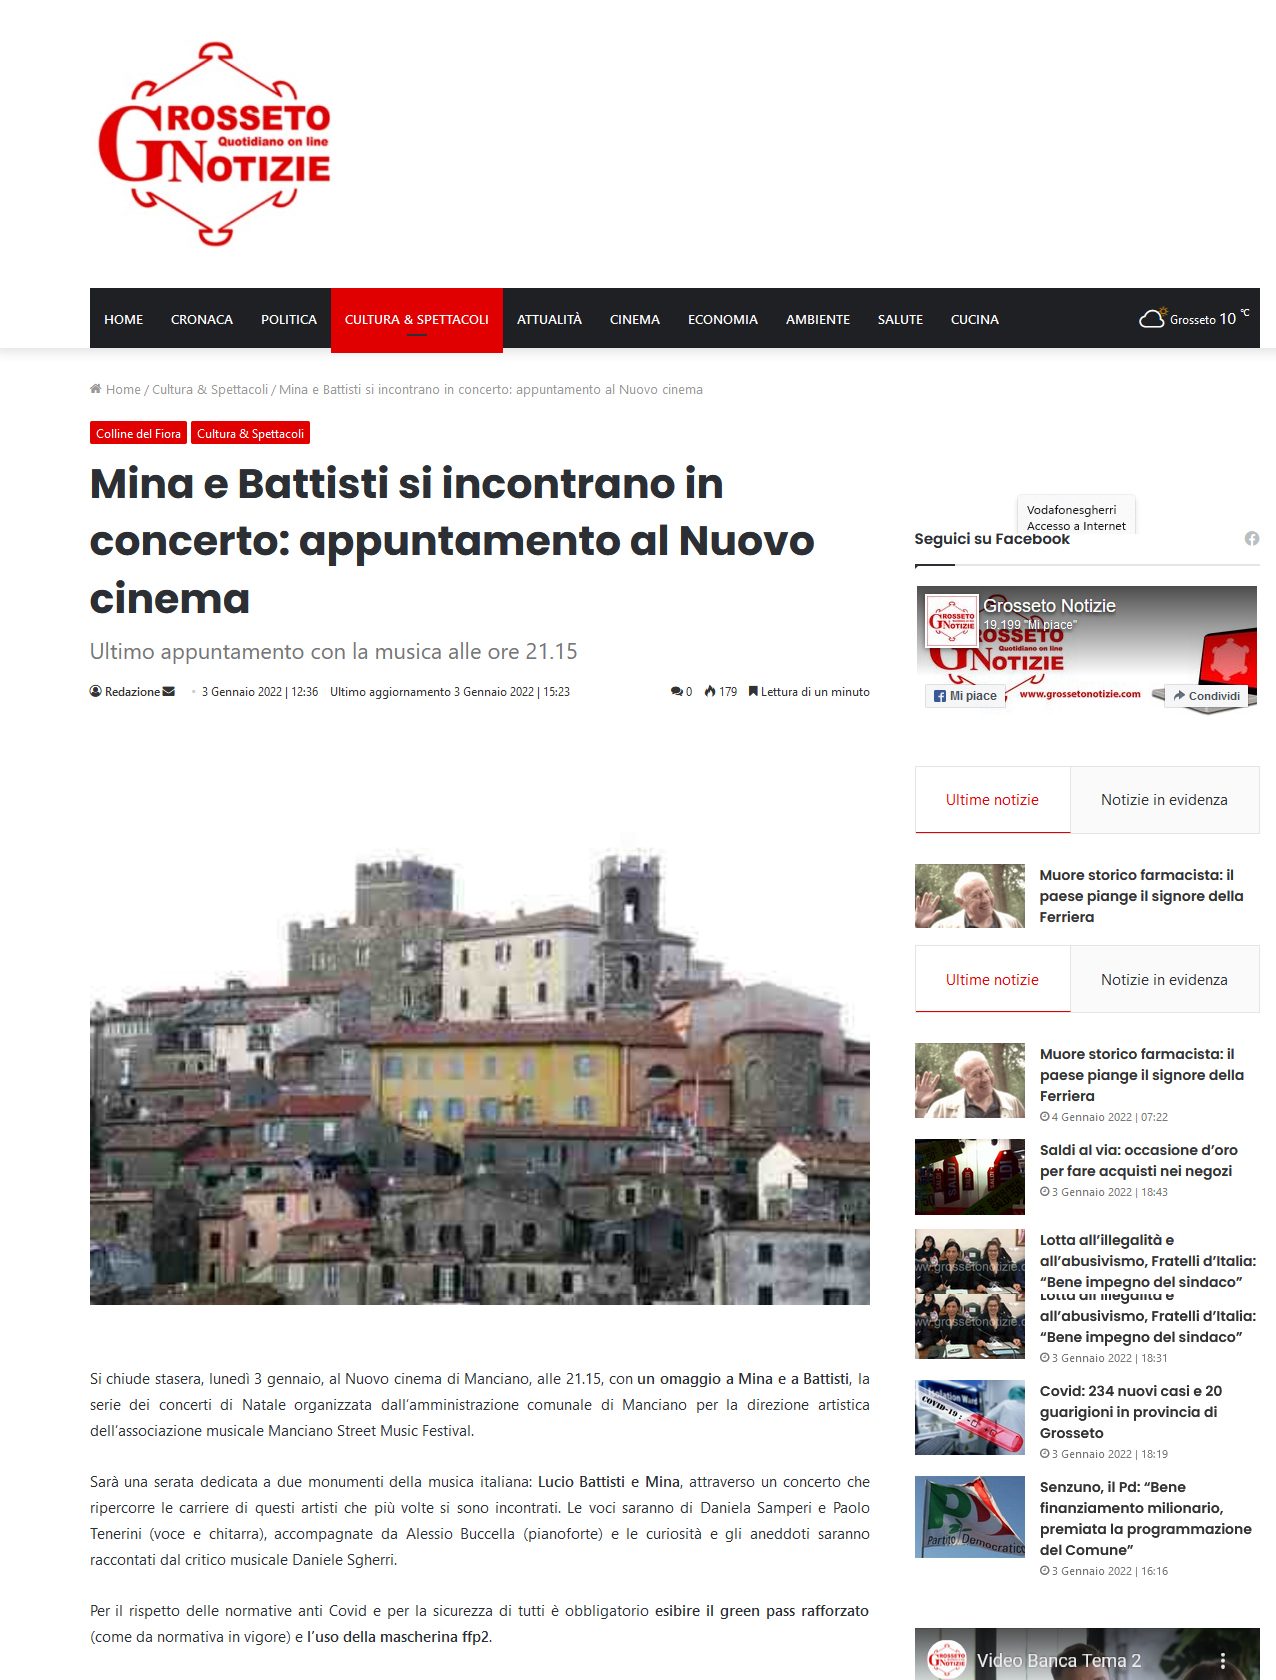 Mina e Battisti si incontrano in concerto: appuntamento al Nuovo Cinema